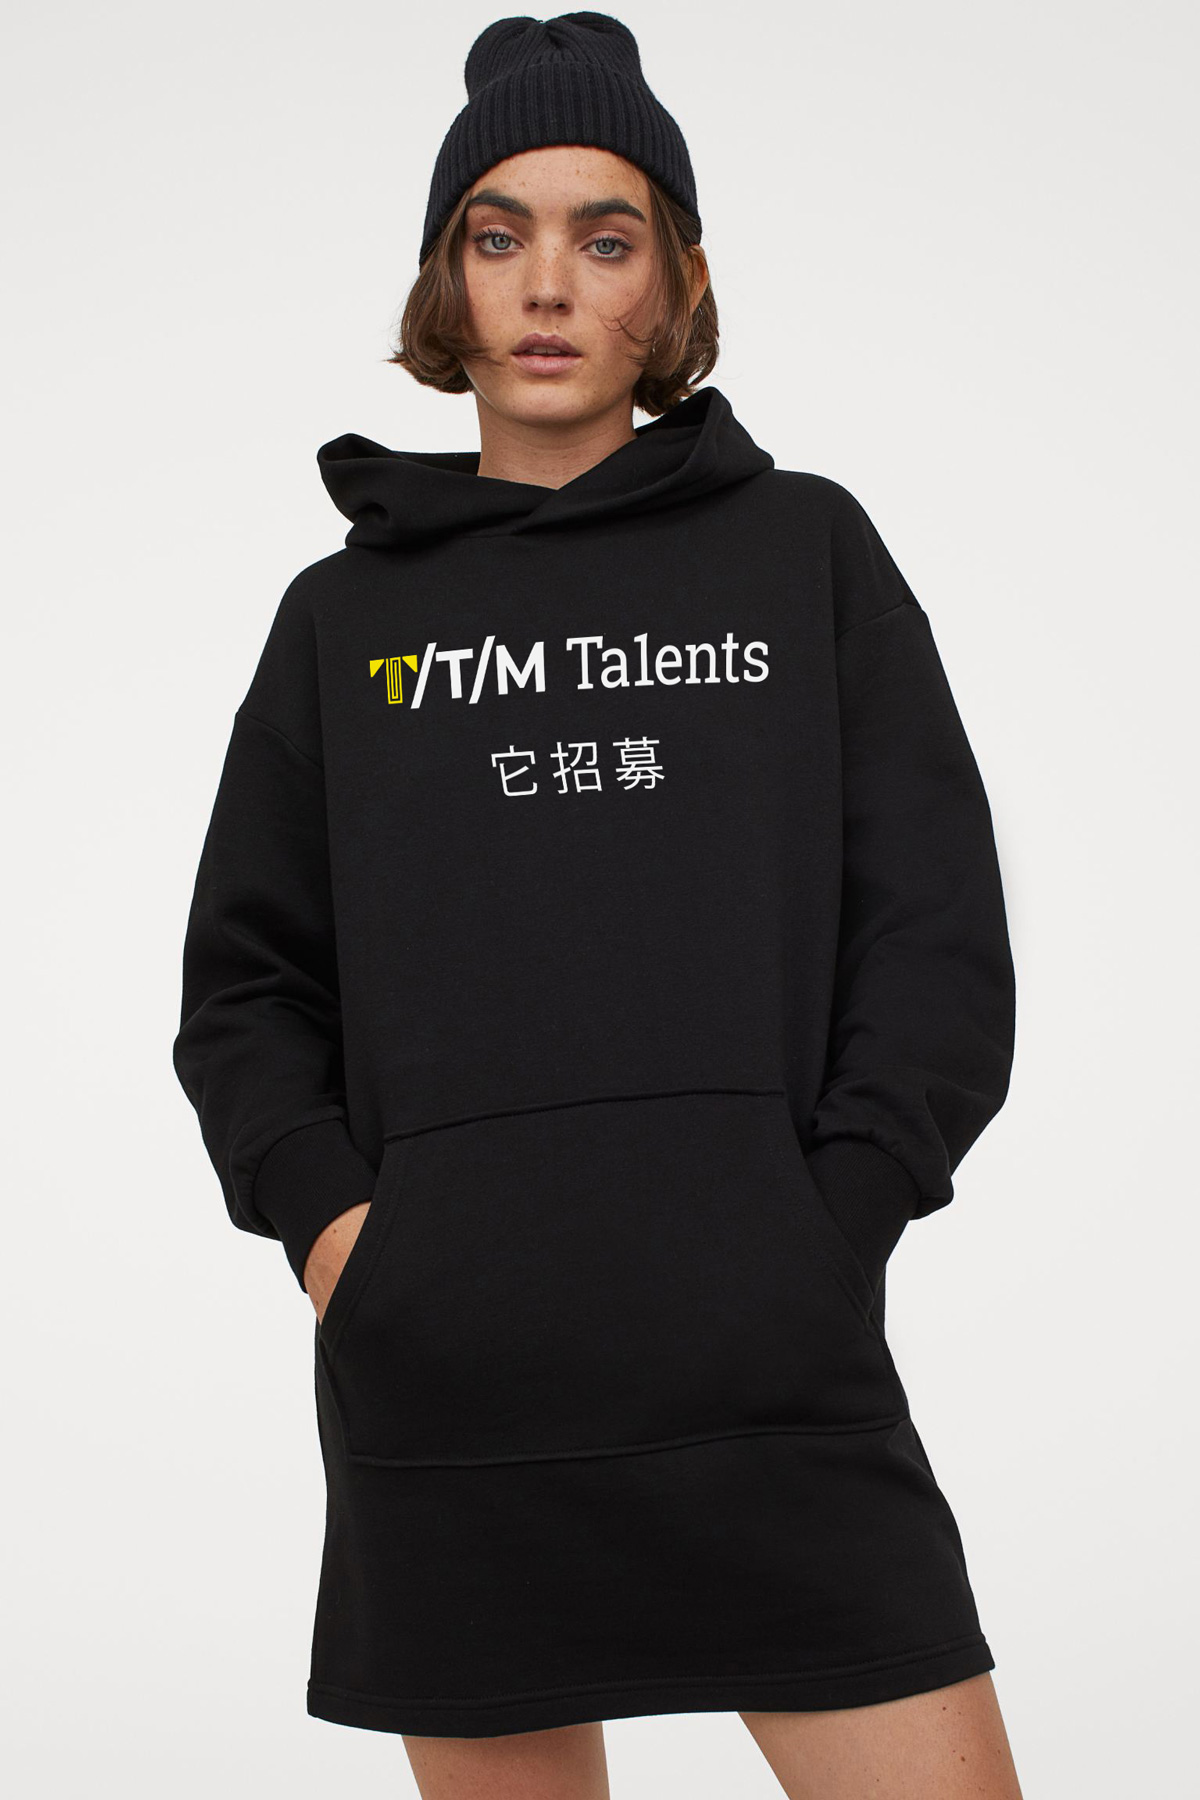 TTM Talents